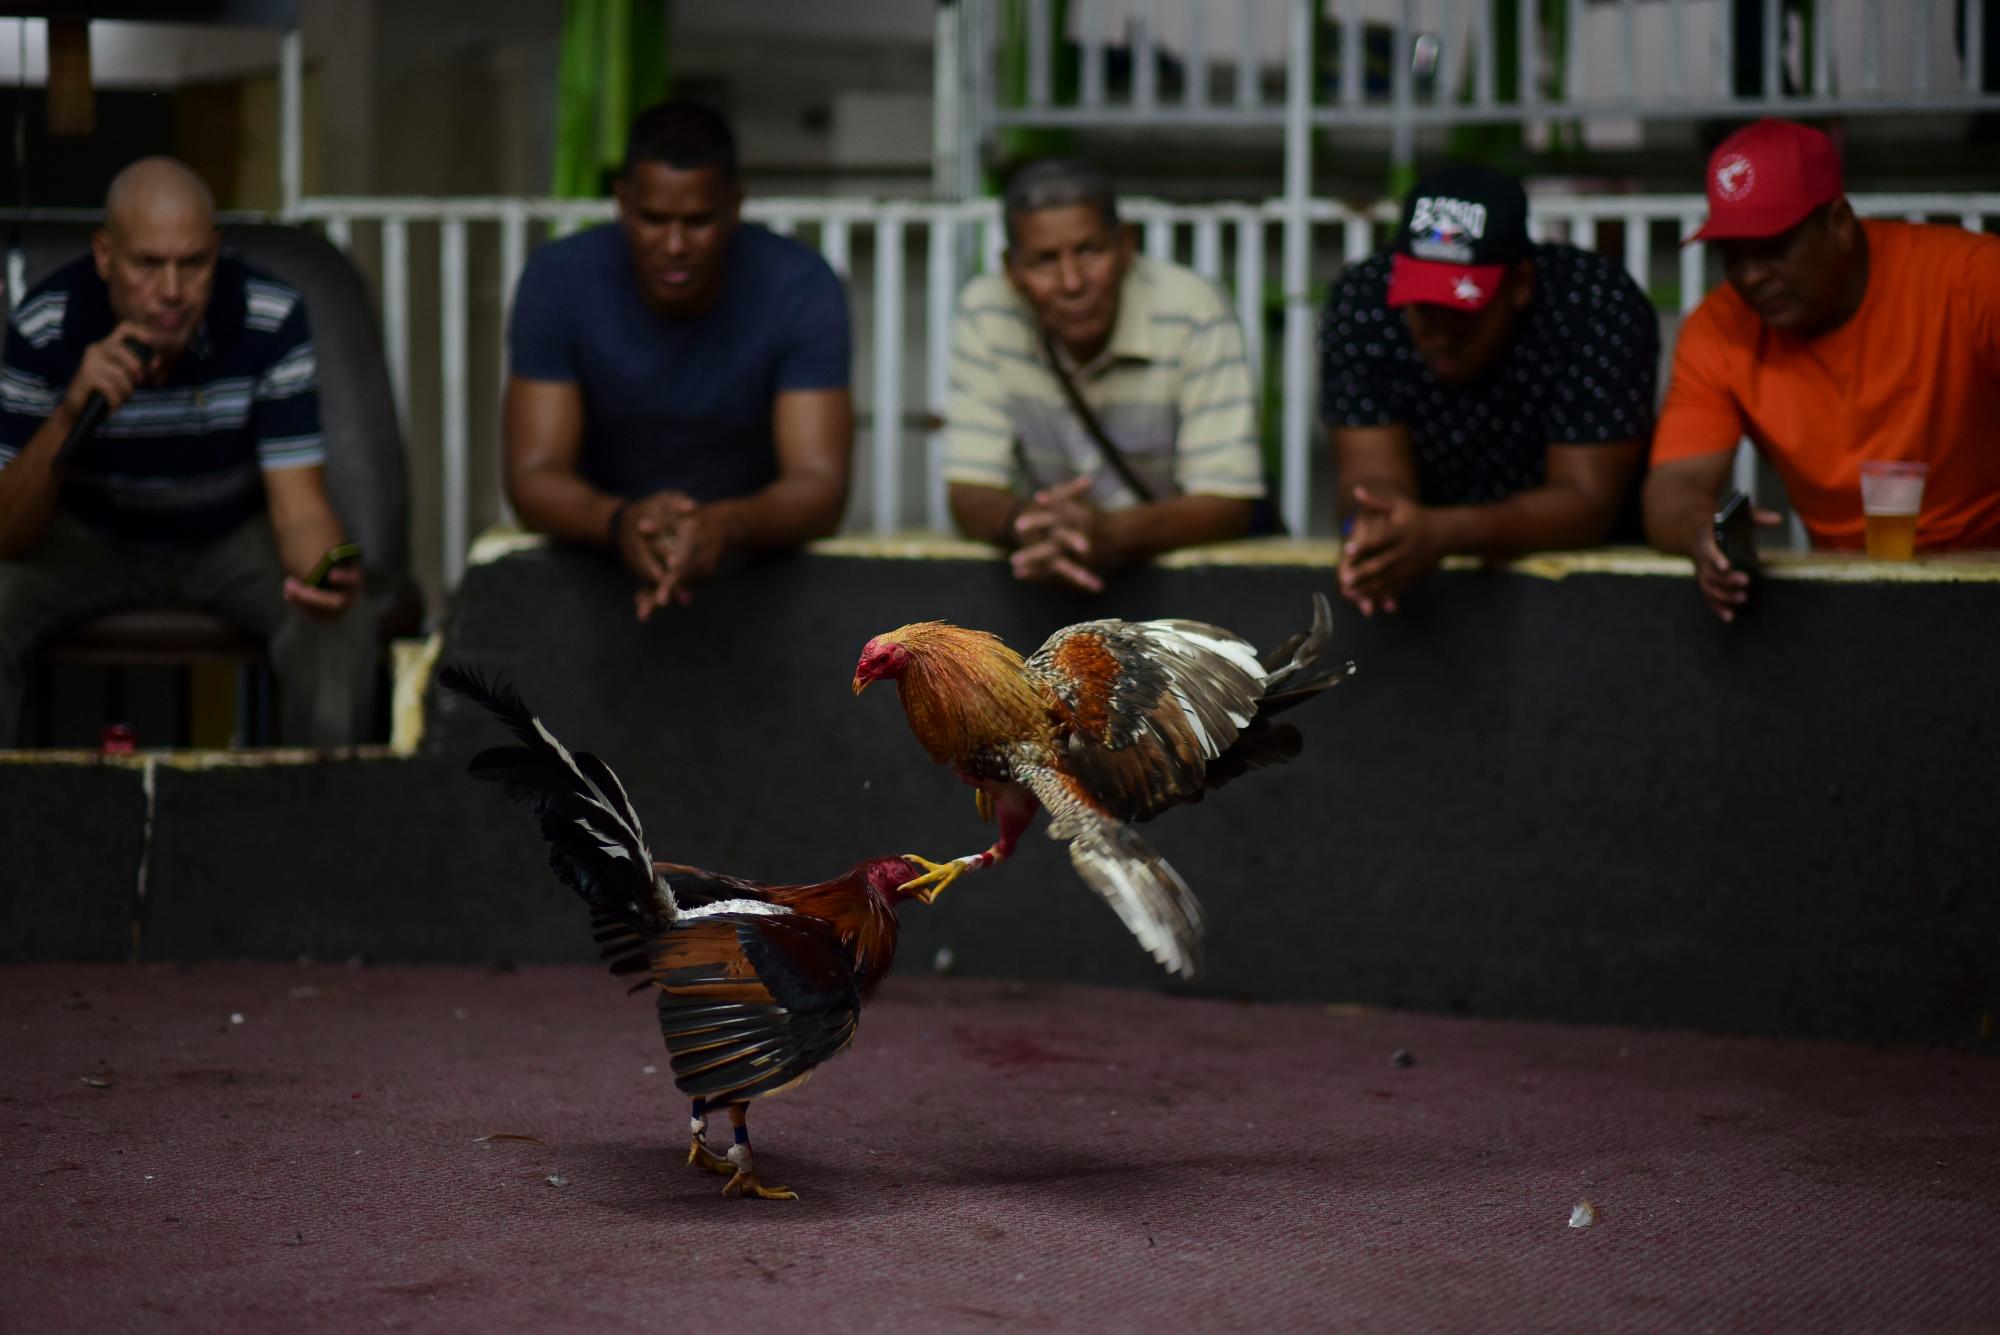 Noche de pelea en el club de peleas de gallos Campanillas, en Toa Baja, Puerto Rico, el miércoles 18 de diciembre de 2019. Algunos legisladores de Puerto Rico creen que la pelea por la prohibición federal de las peleas de gallos terminará en la corte, llevándolos a la clandestinidad una vez más.